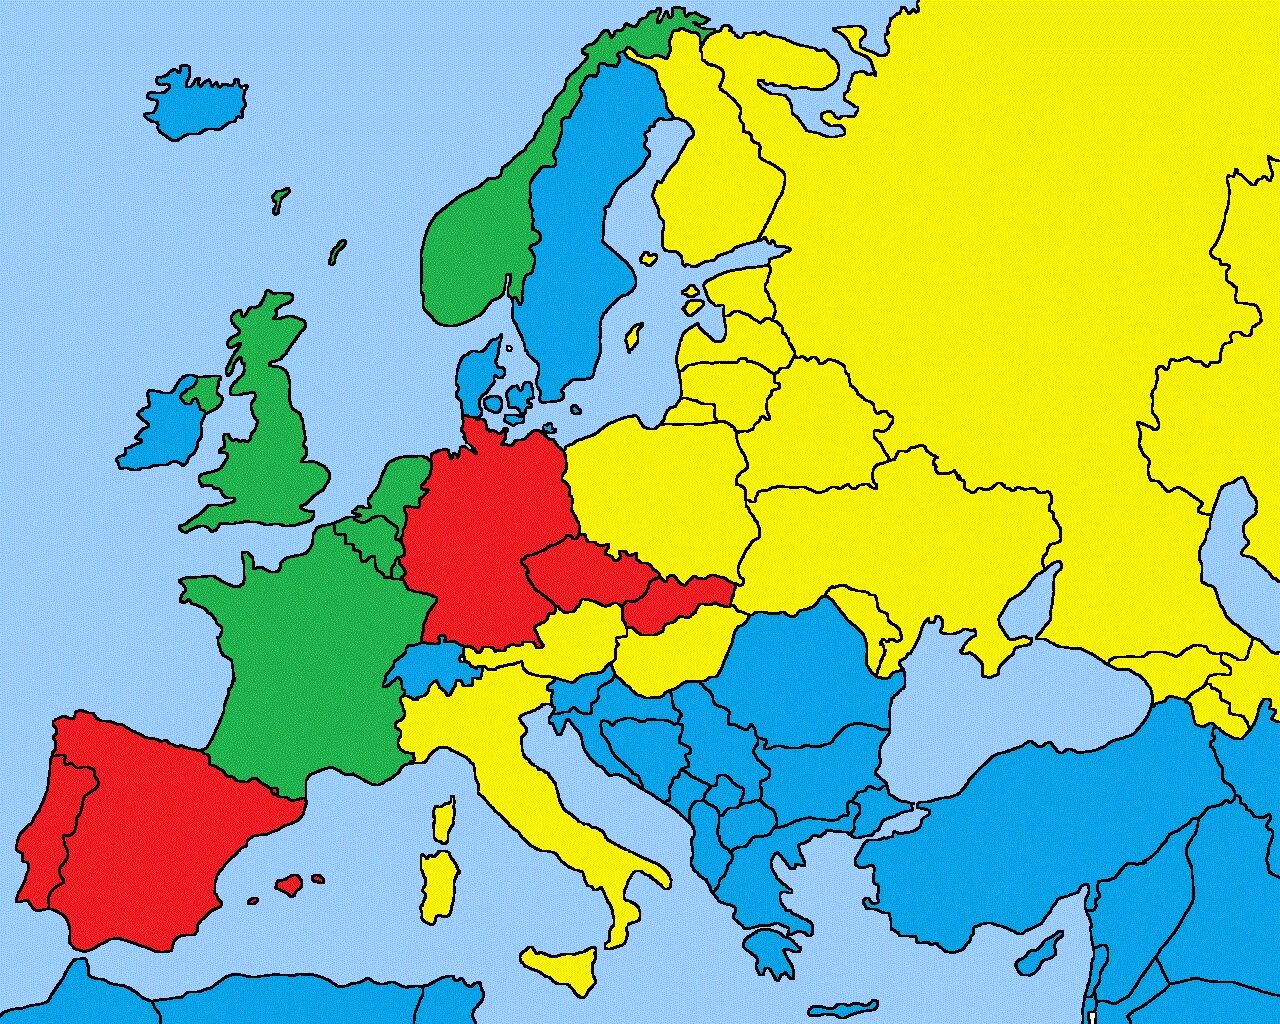 Europa und. Карта - Европа. Карта Европы без стран. Цветная политическая карта Европы. Страны Европы.